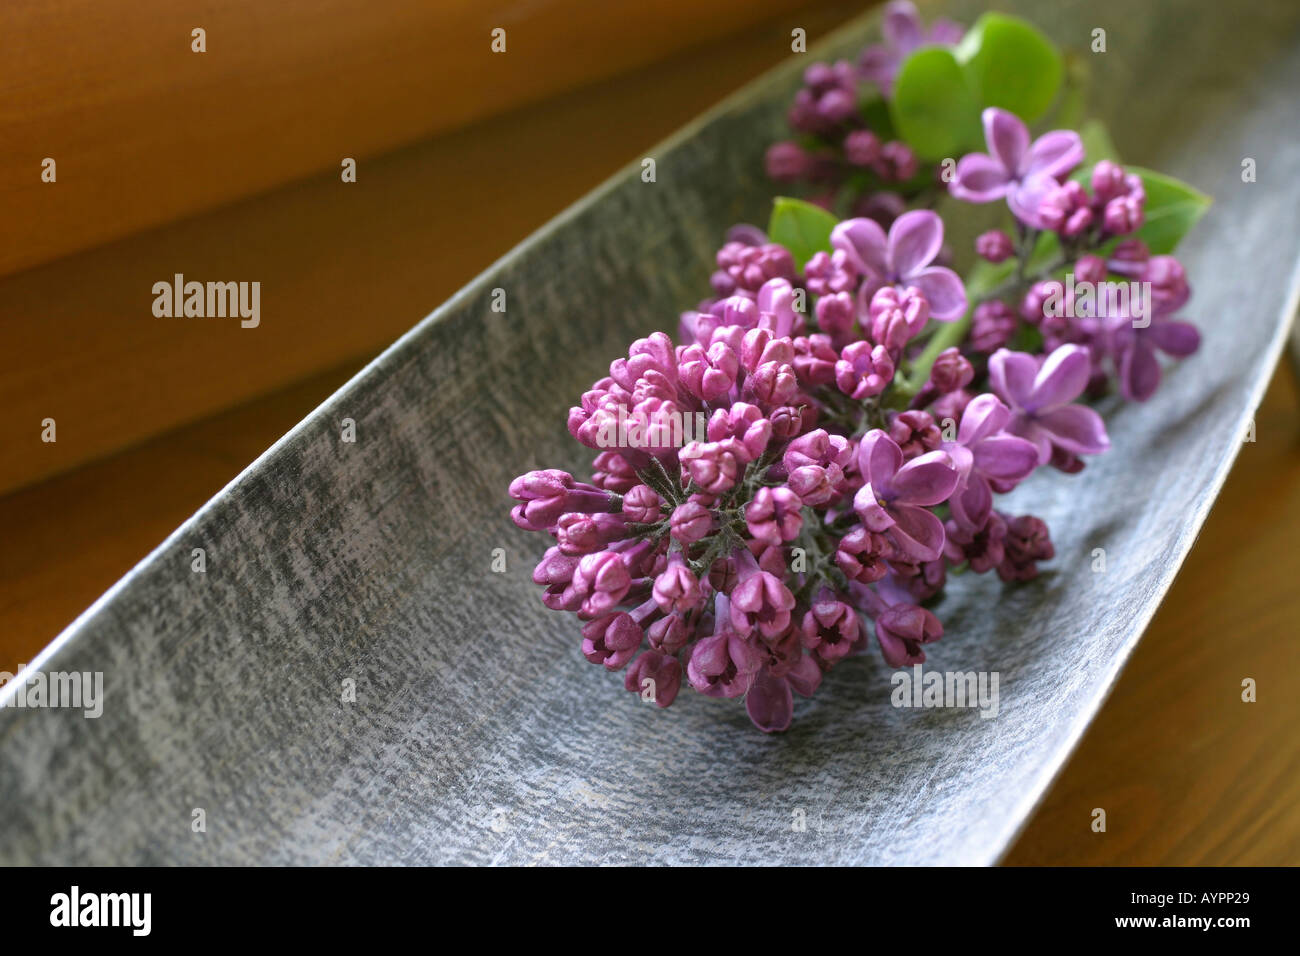 Un bouquet de lilas placé sur une barre métallique Banque D'Images